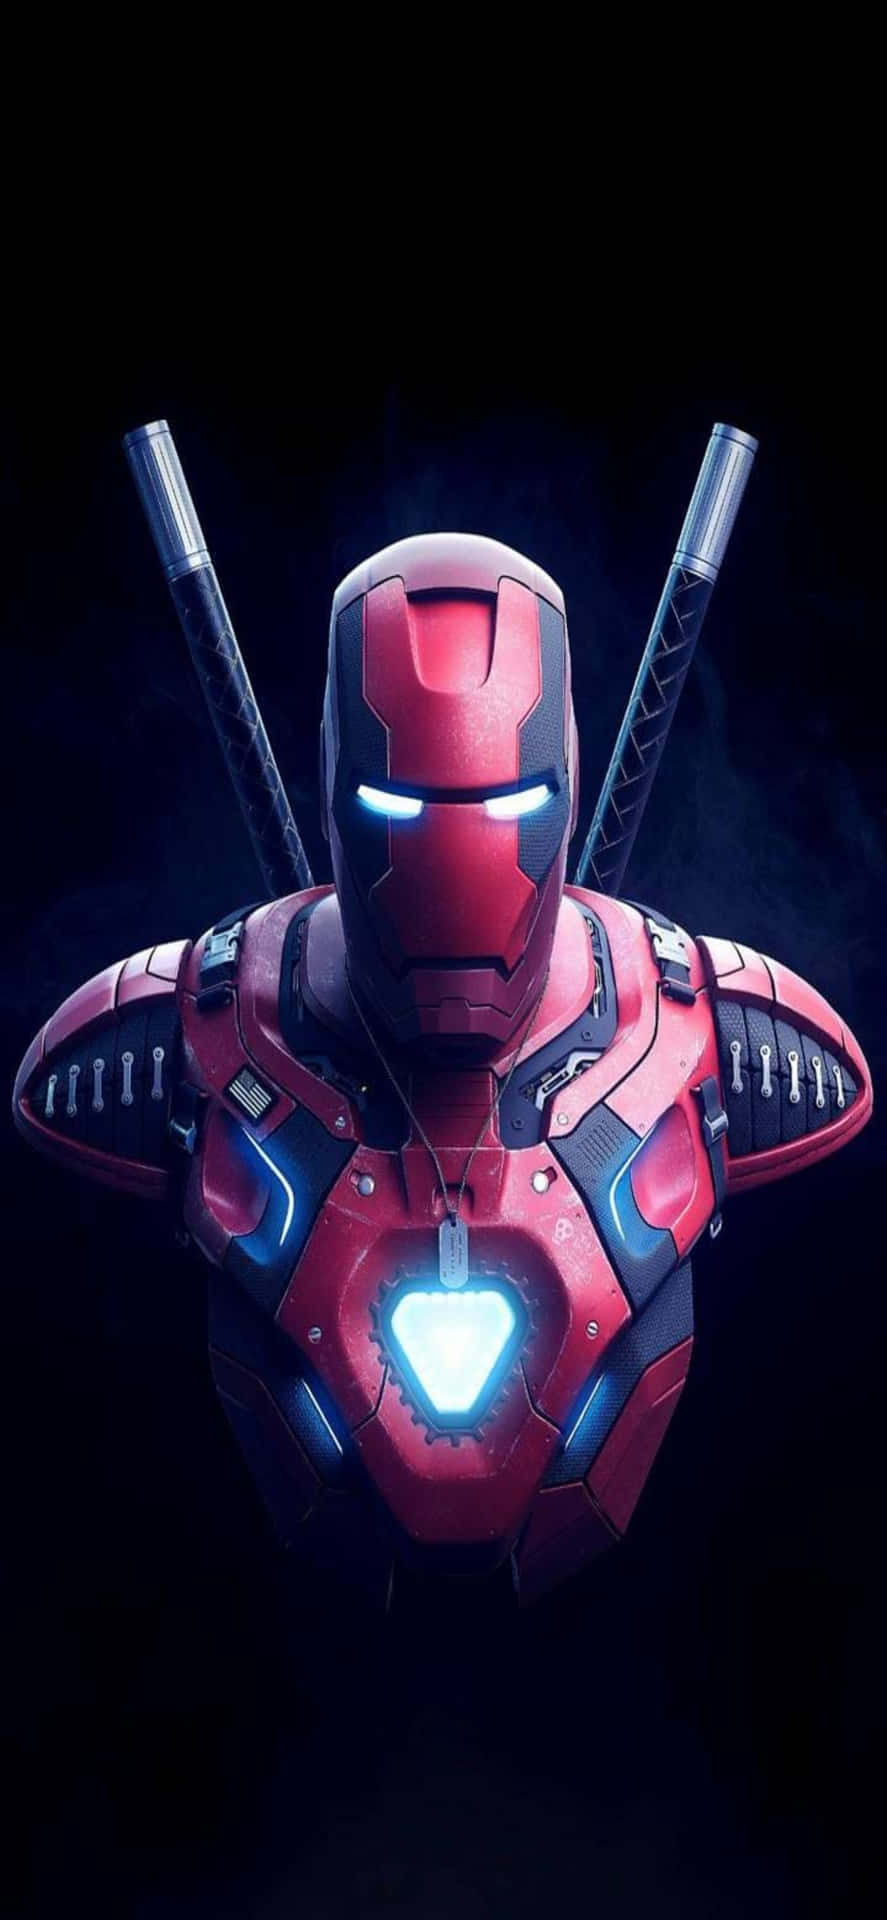 Iphonex-bakgrund Med Iron Man - Iron Man Kombinerad Med Deadpool.